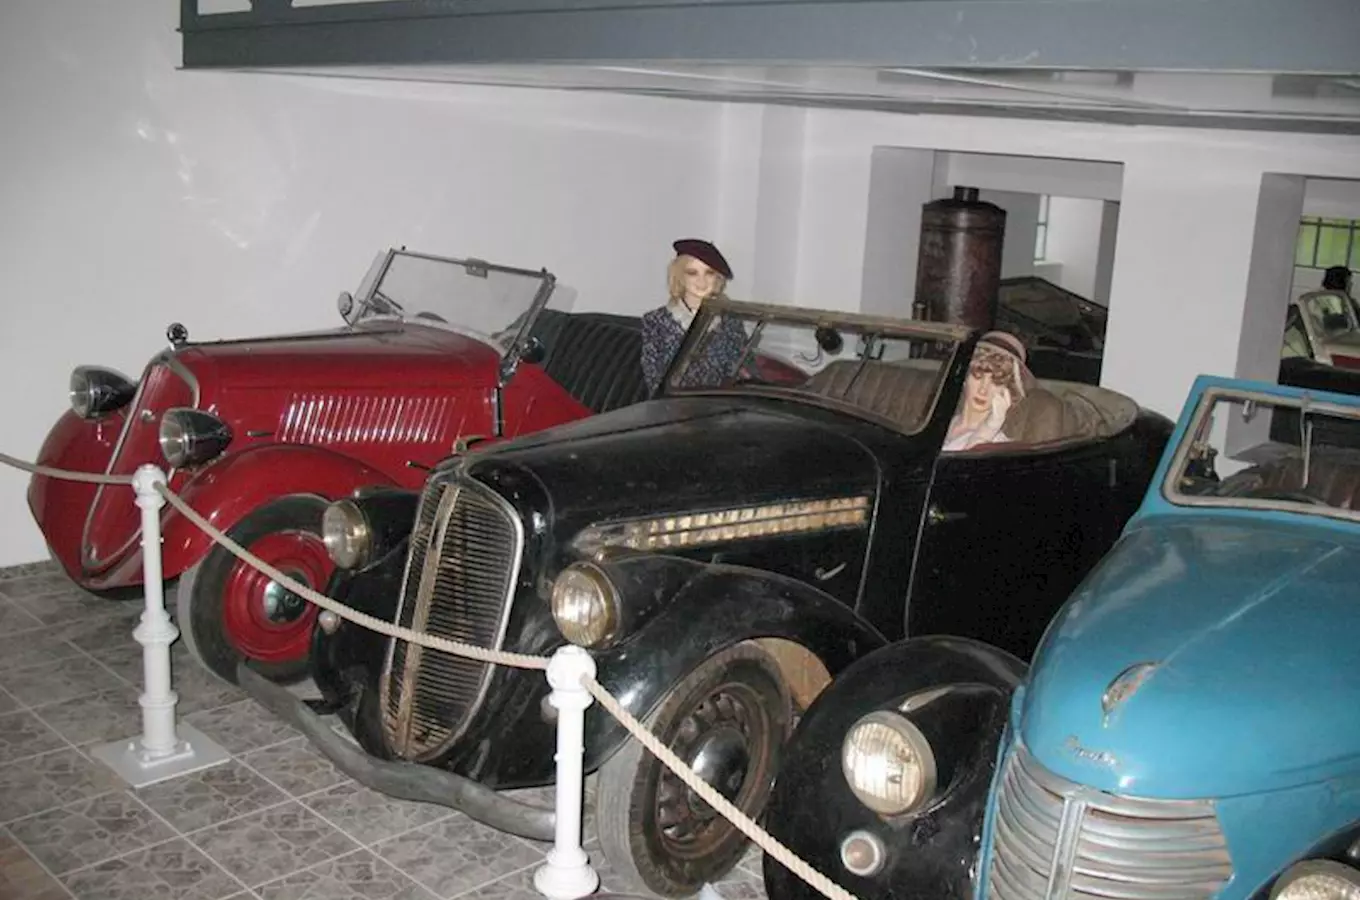 Muzeum motorismu ve Znojmě